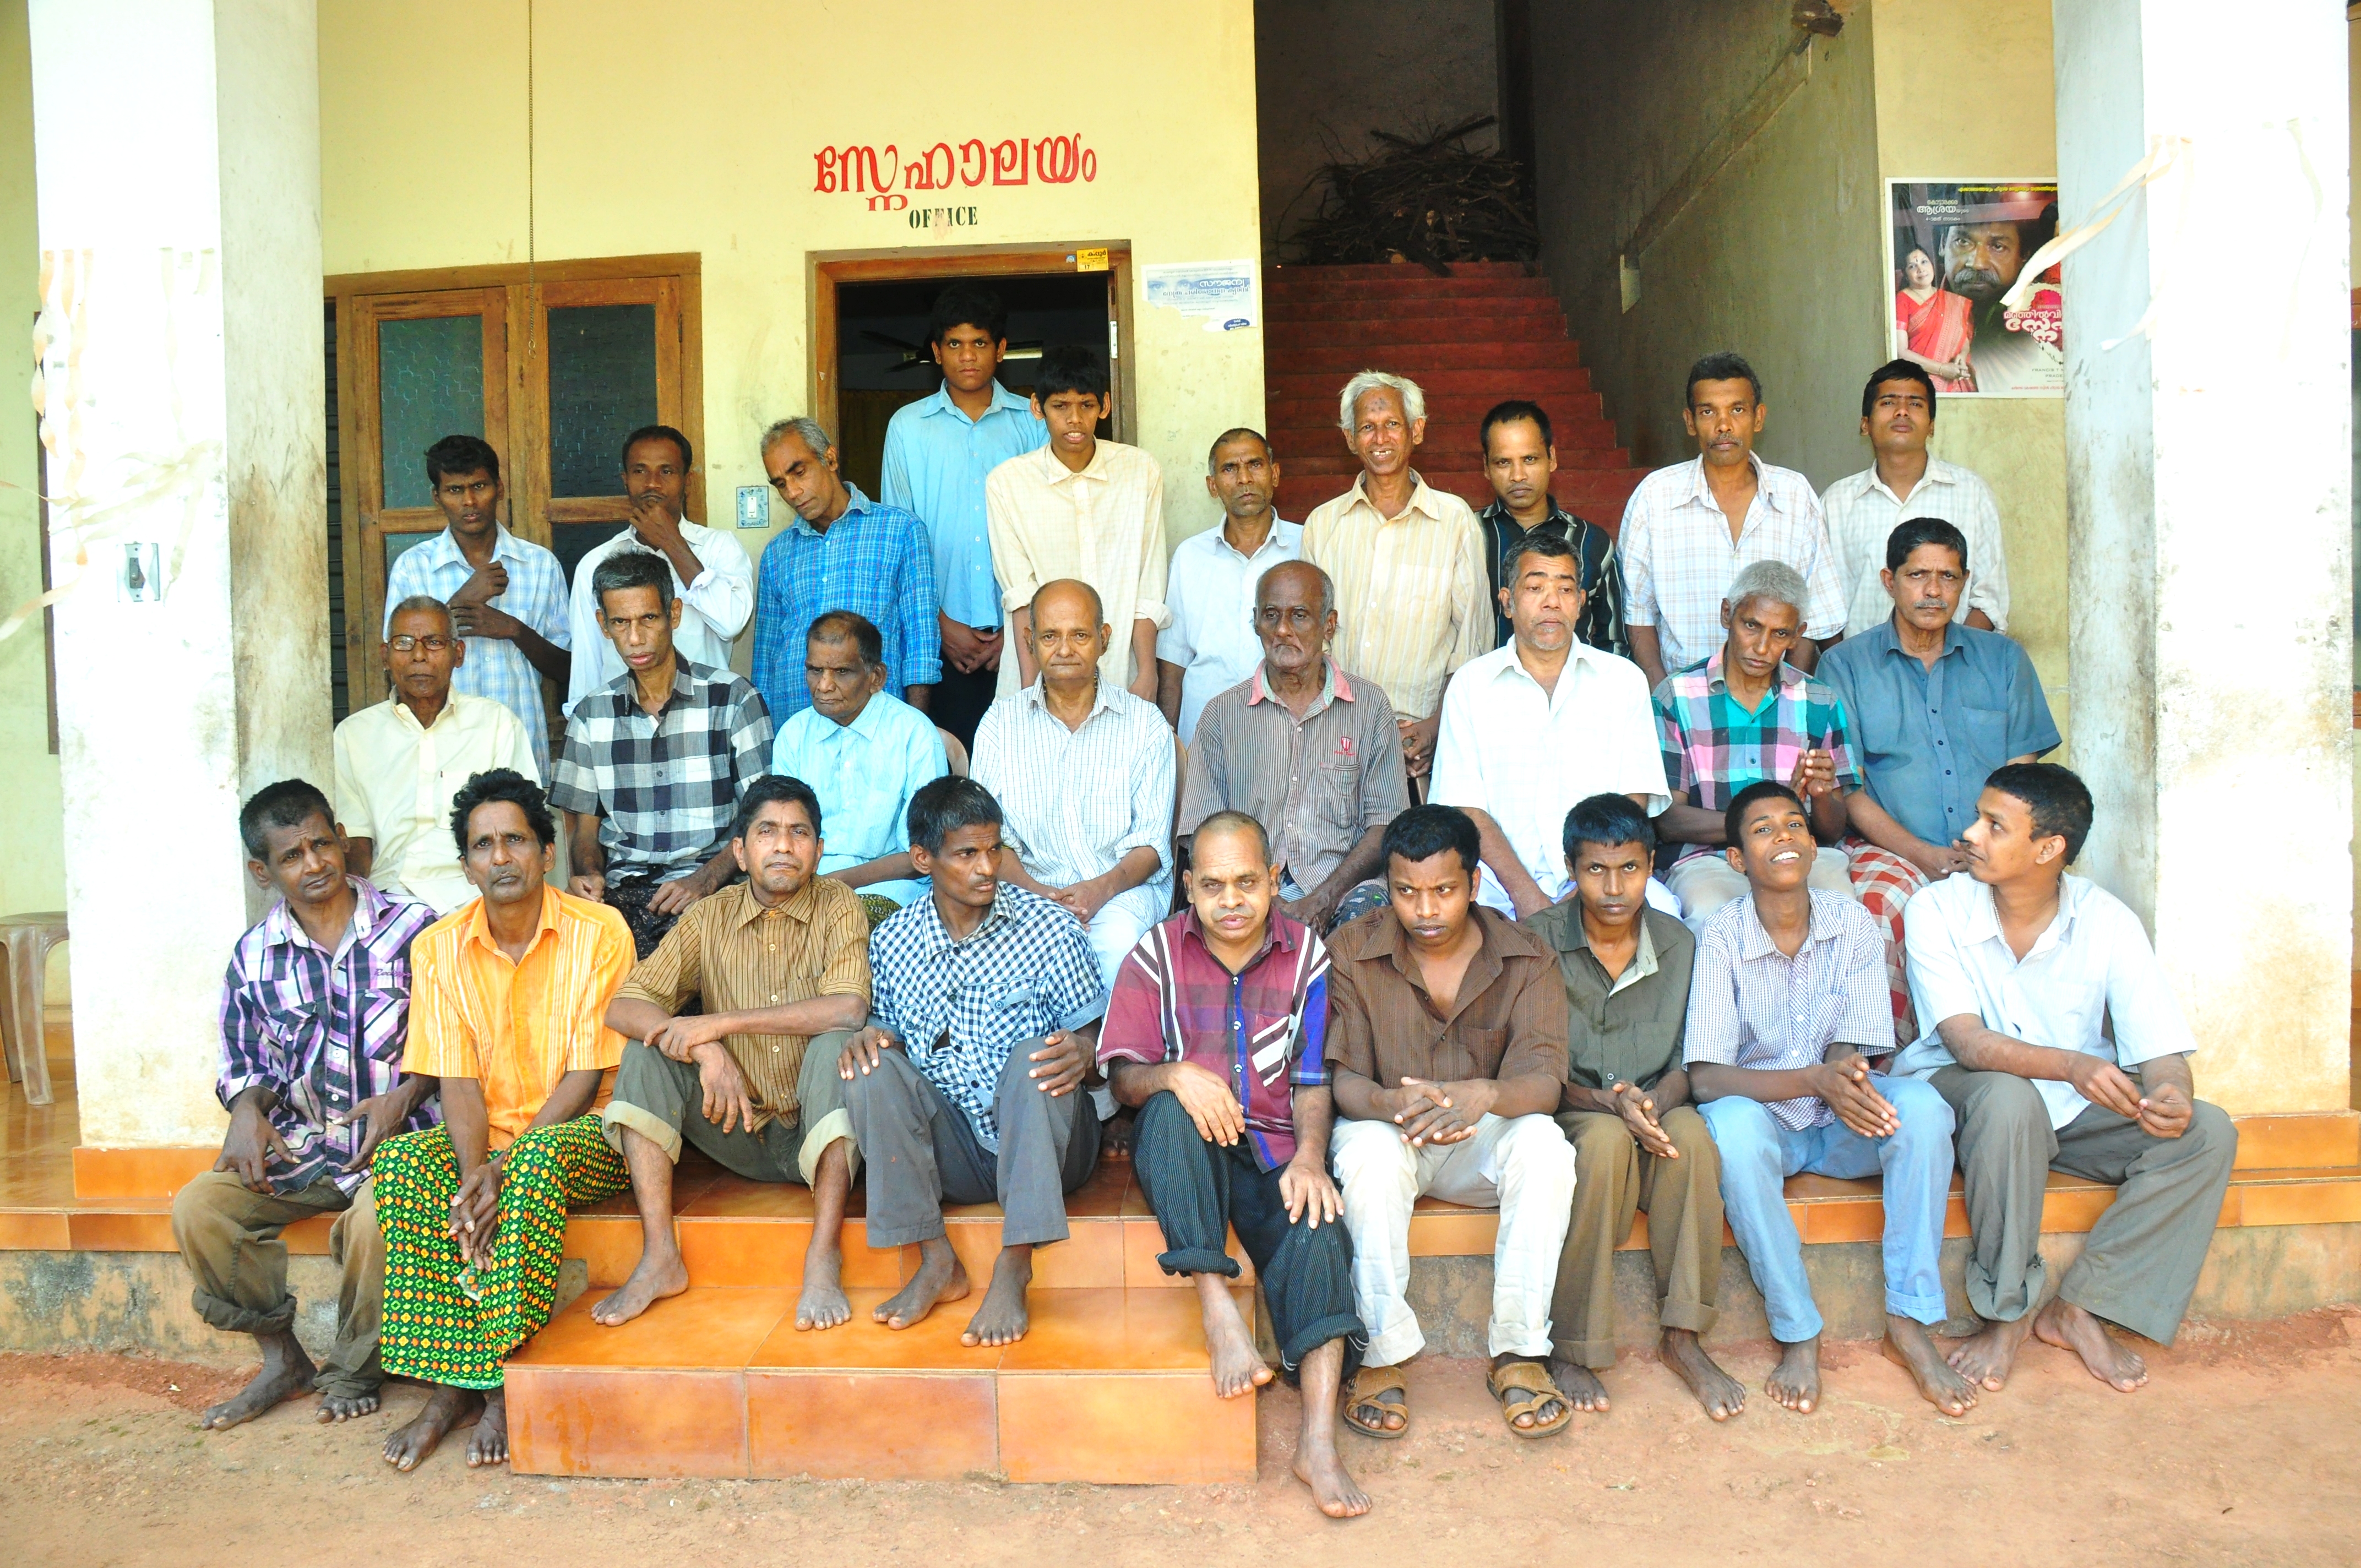 The inmates of Sisubhavan